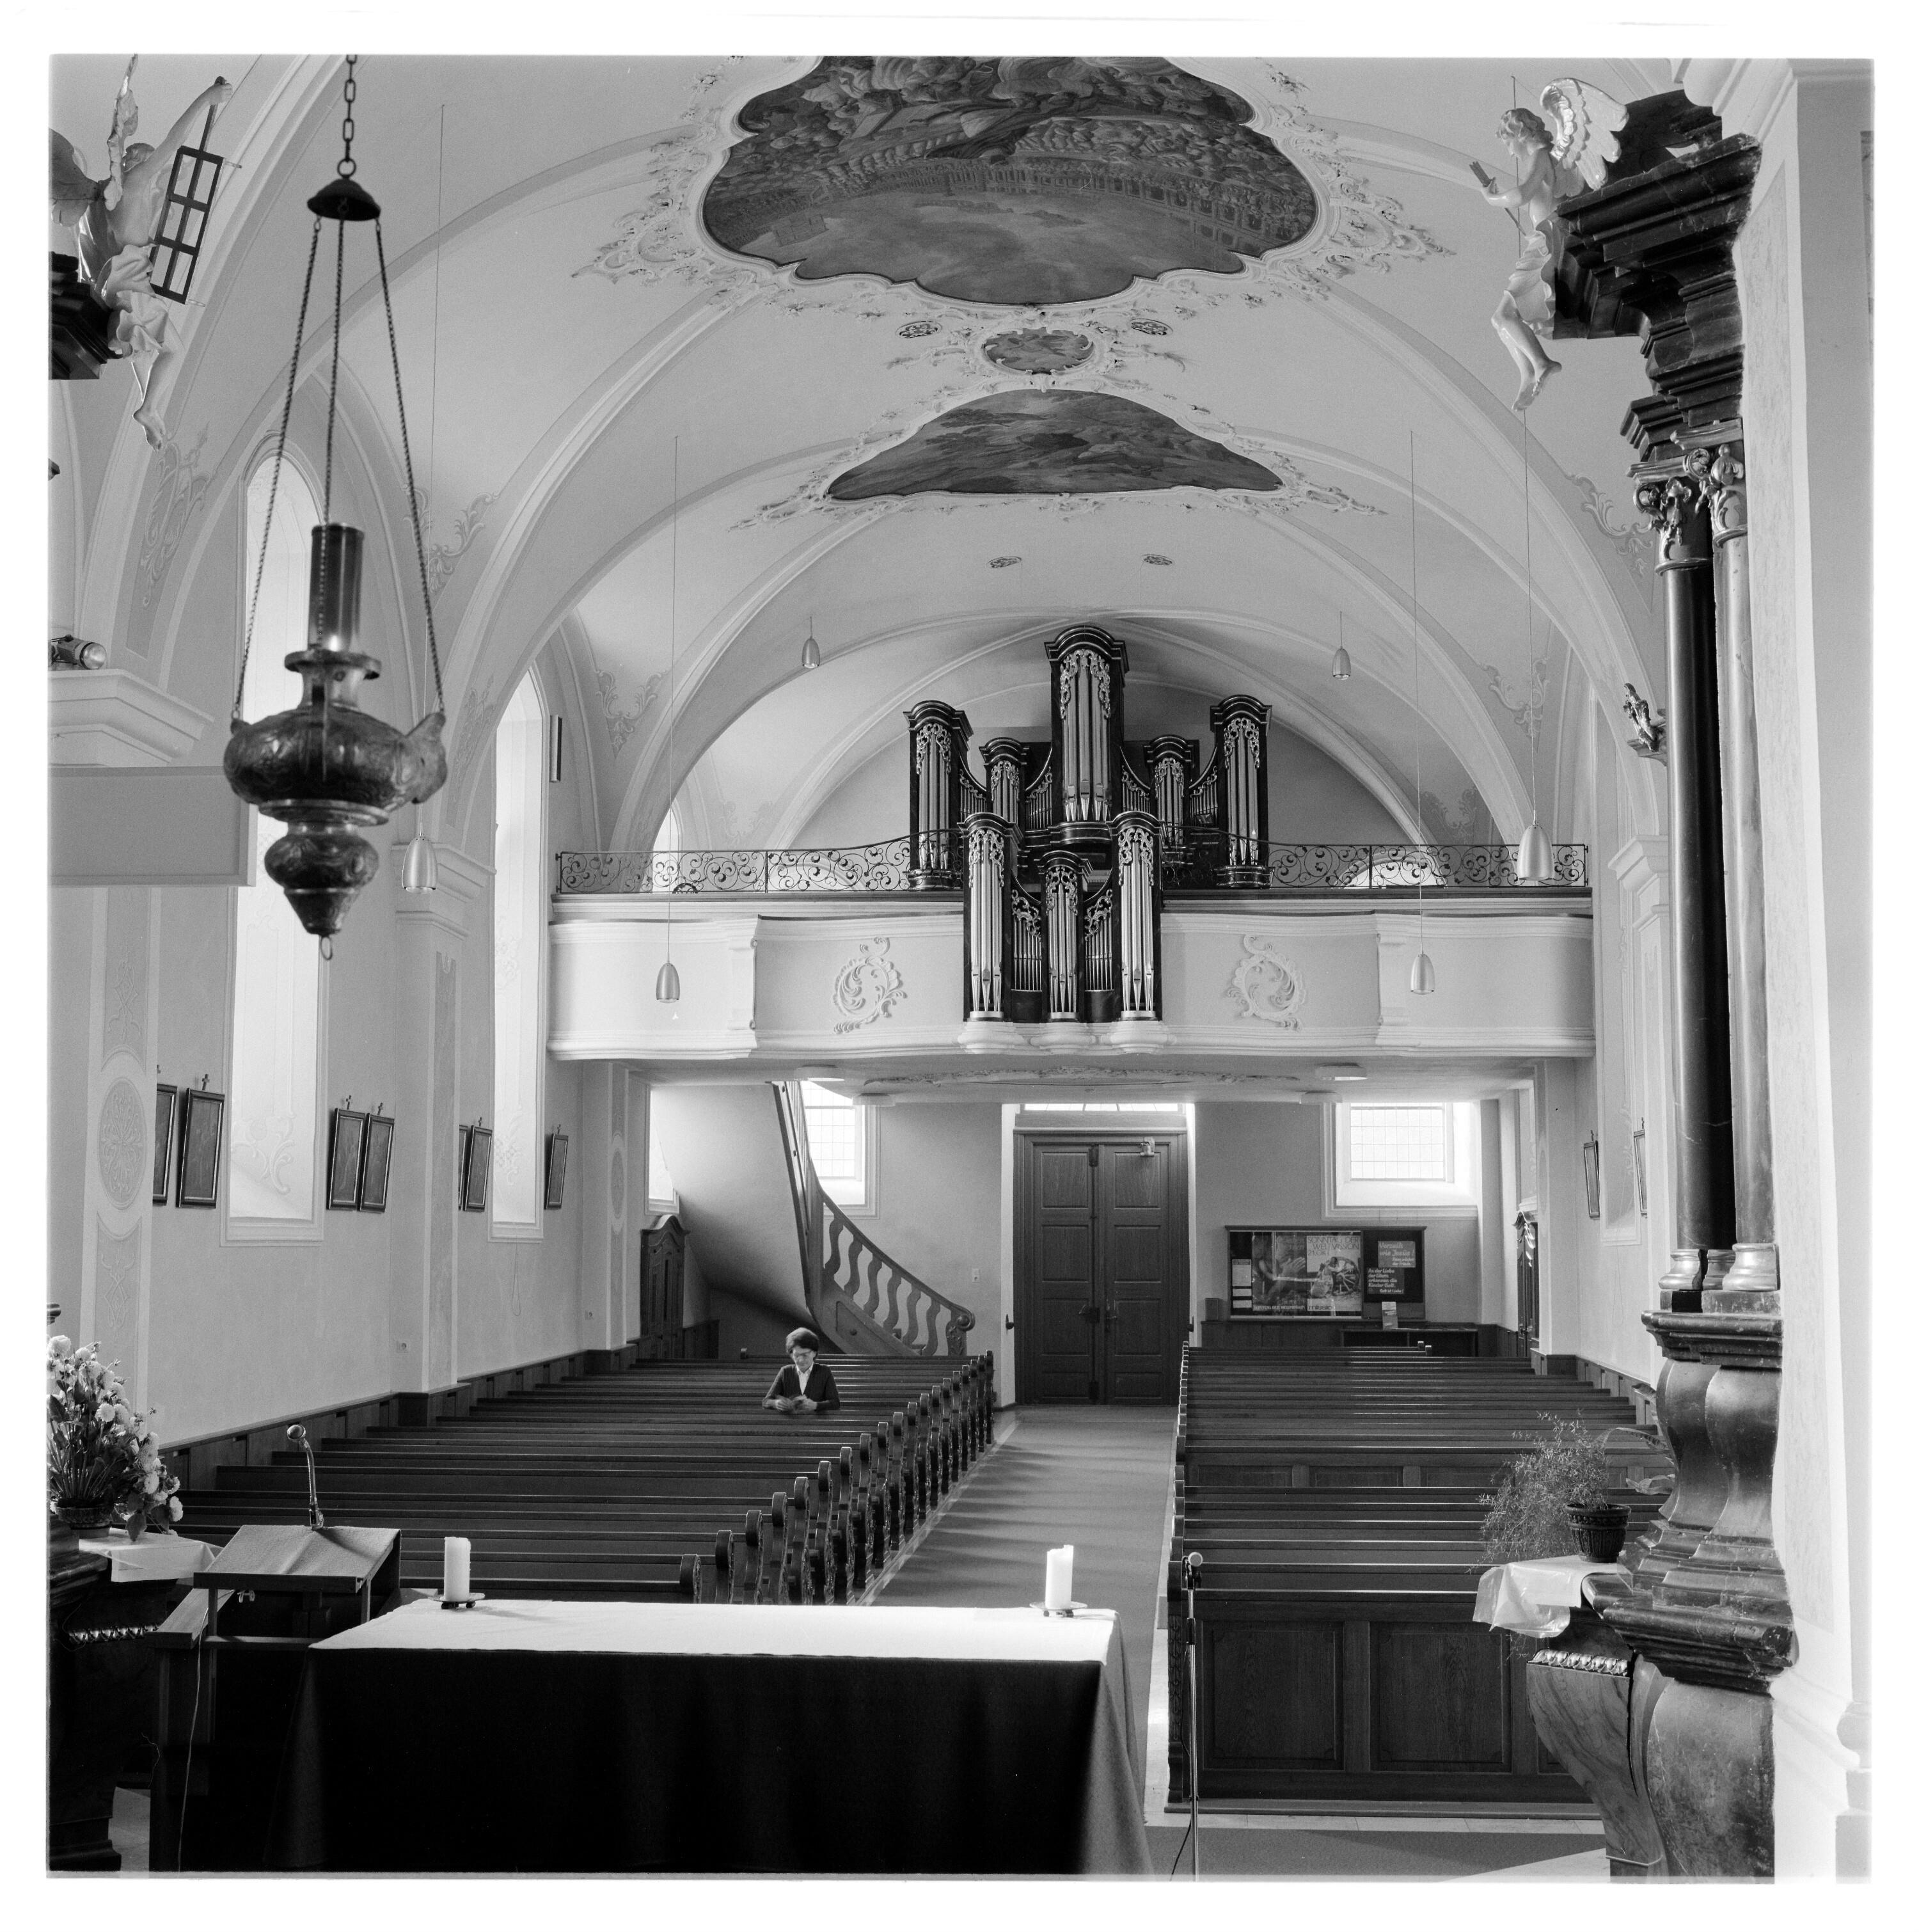 Nadler Orgelaufnahmen, Ludesch, St. Sebastian></div>


    <hr>
    <div class=